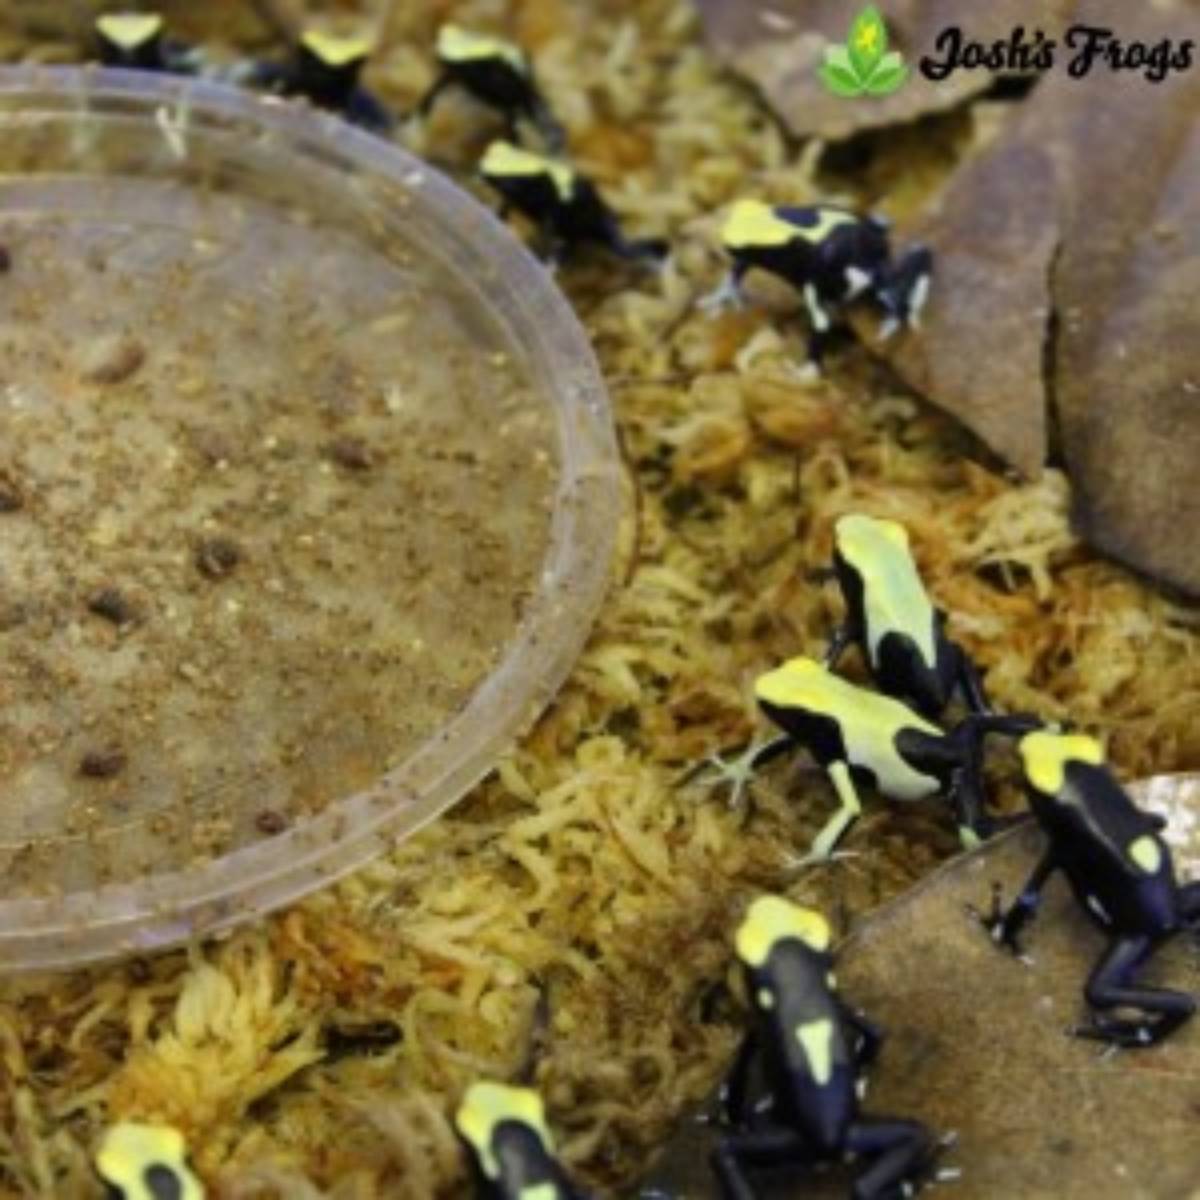 dendrobates tinctorius yellowback tincs poison dart frogs for sale Josh's frogs around feeding dish